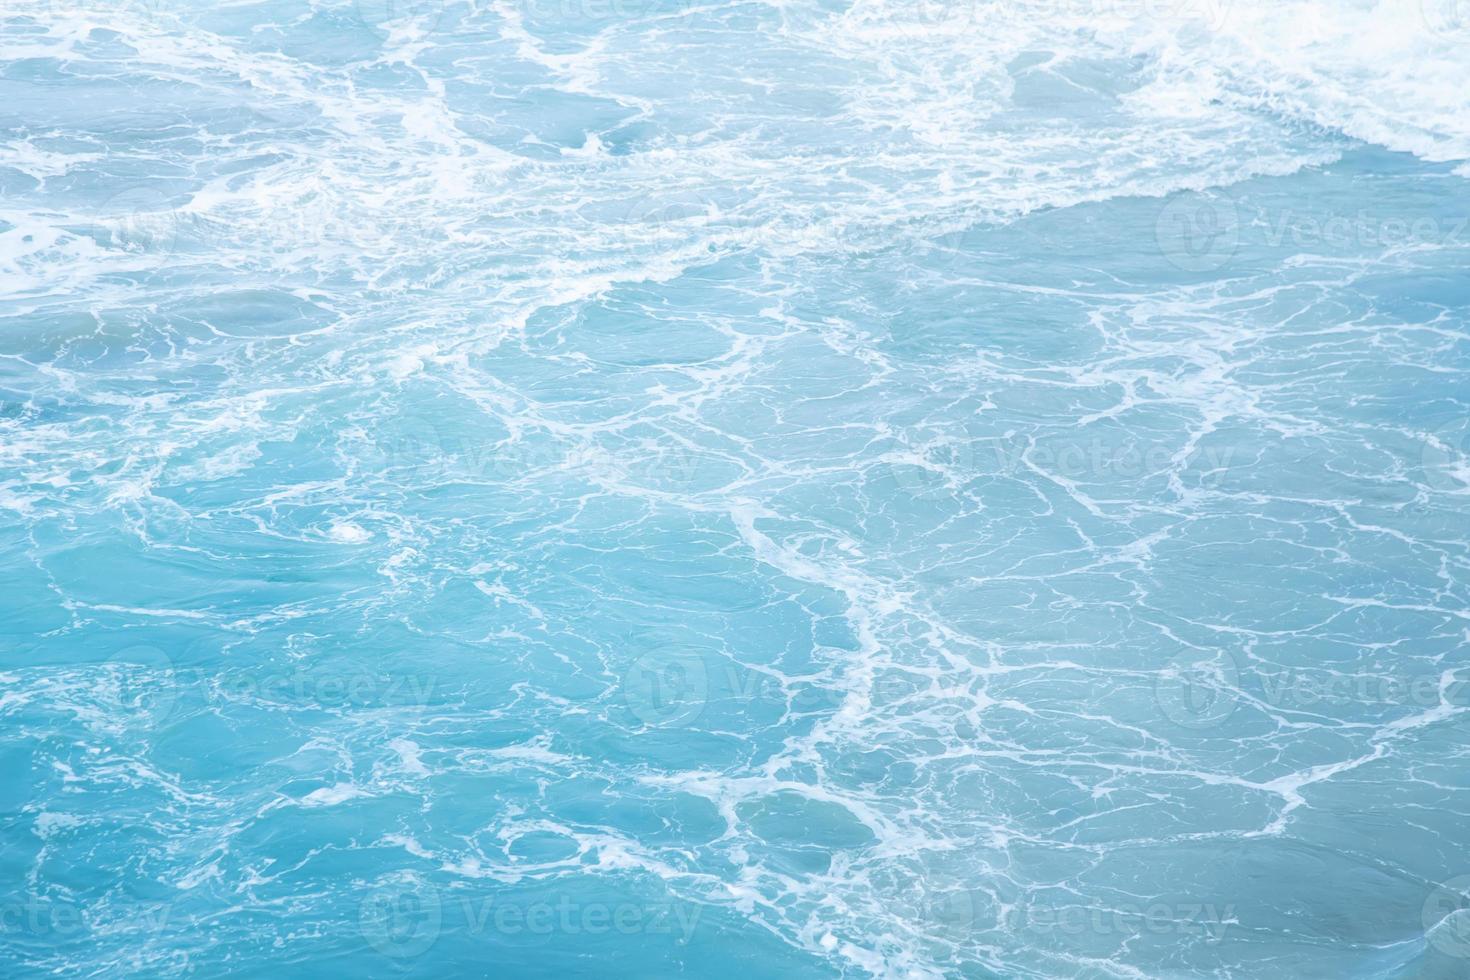 zee golven in oceaan golf spatten rimpel water. blauwe waterachtergrond. laat ruimte over om beschrijvende tekst te schrijven. foto